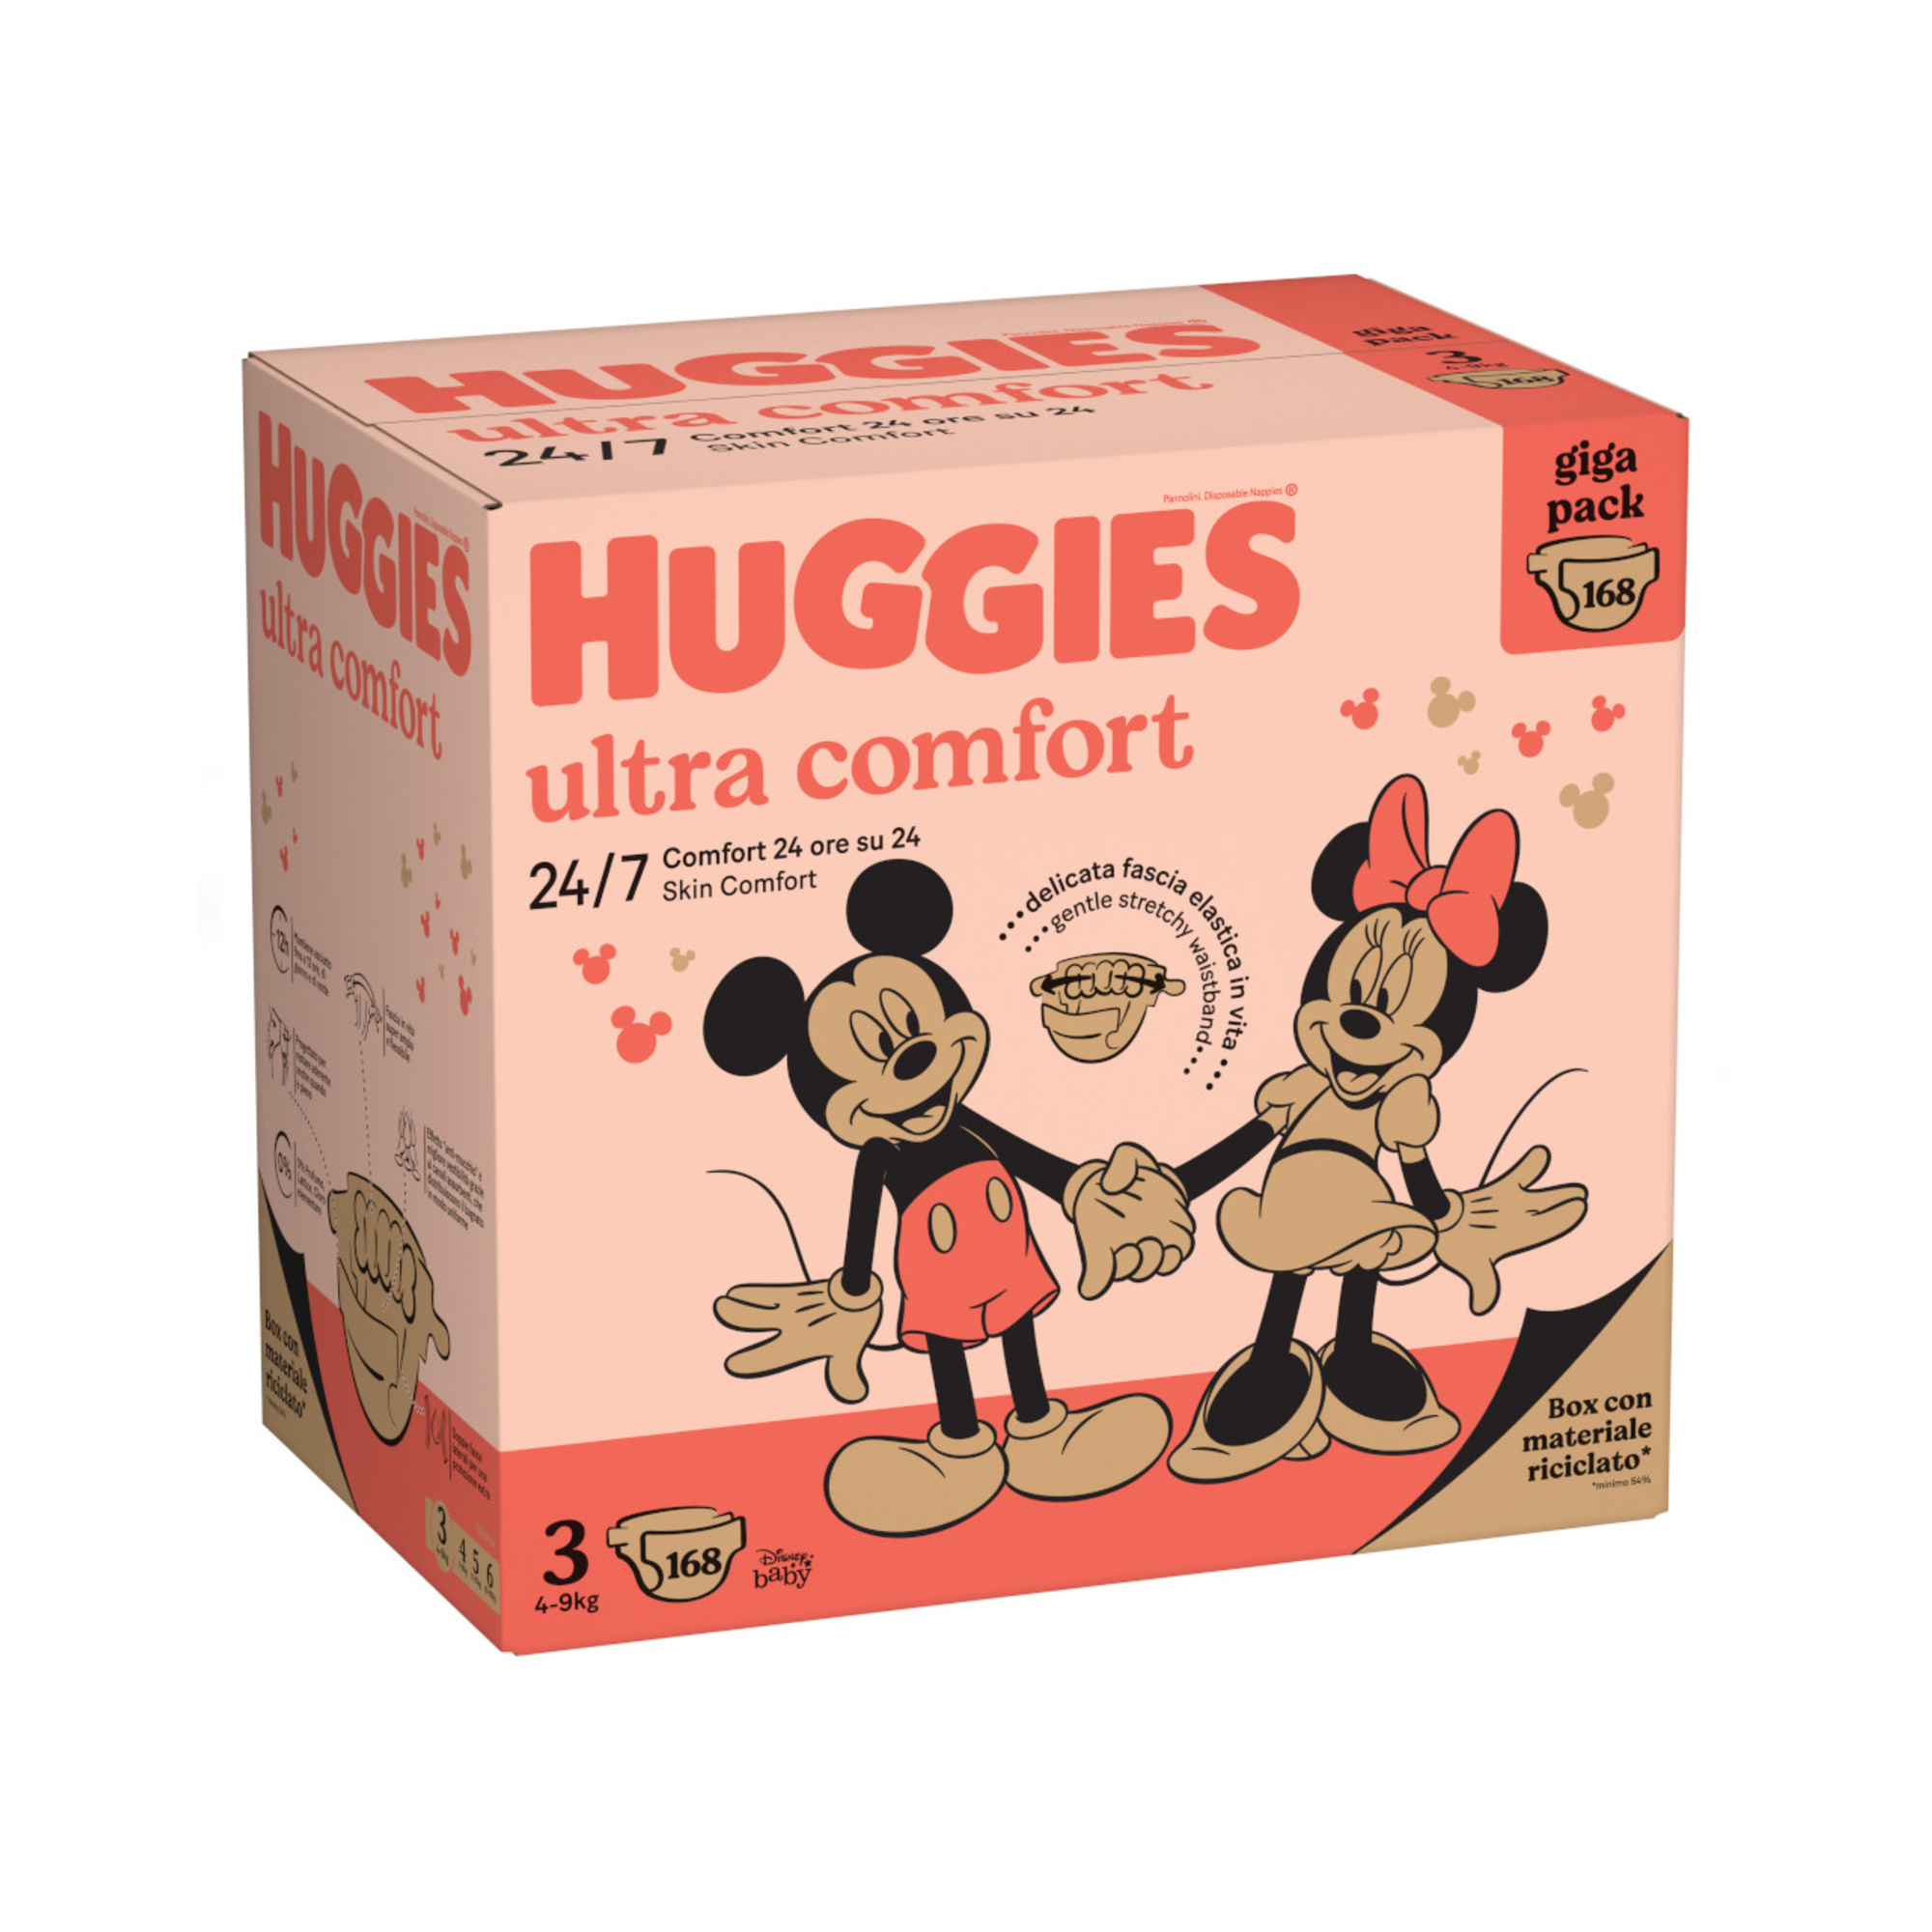 Gigapack tg.3 168 pannolini - huggies ultra comfort - Huggies